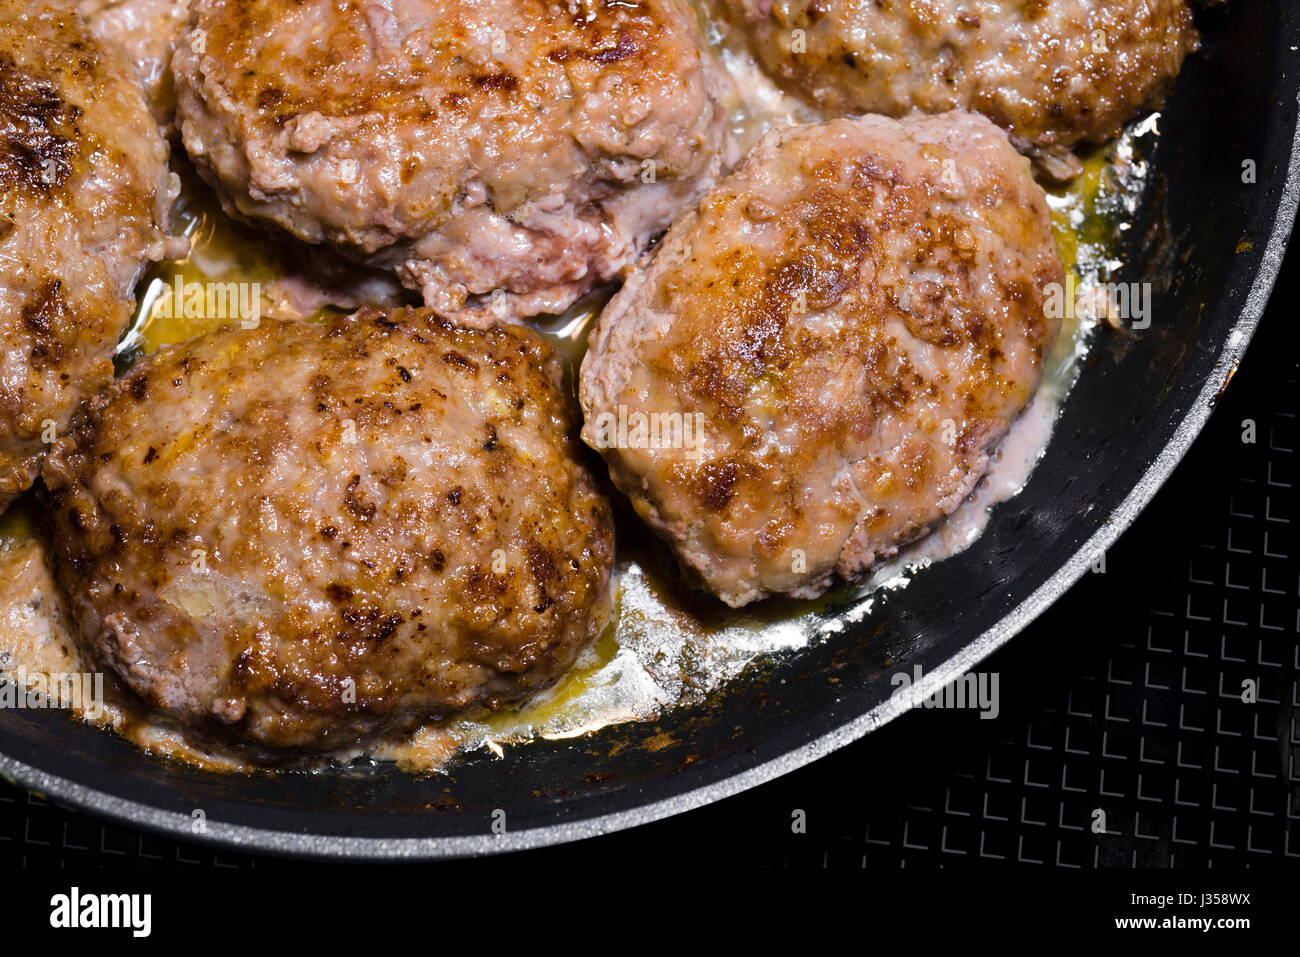 Délicieux de la viande de boeuf populaires escalope de viande avec des épices, cuits sur prescription de la cuisine ukrainienne, frits dans l'huile jusqu'à cuisson complète. Il est très nourrissant Banque D'Images